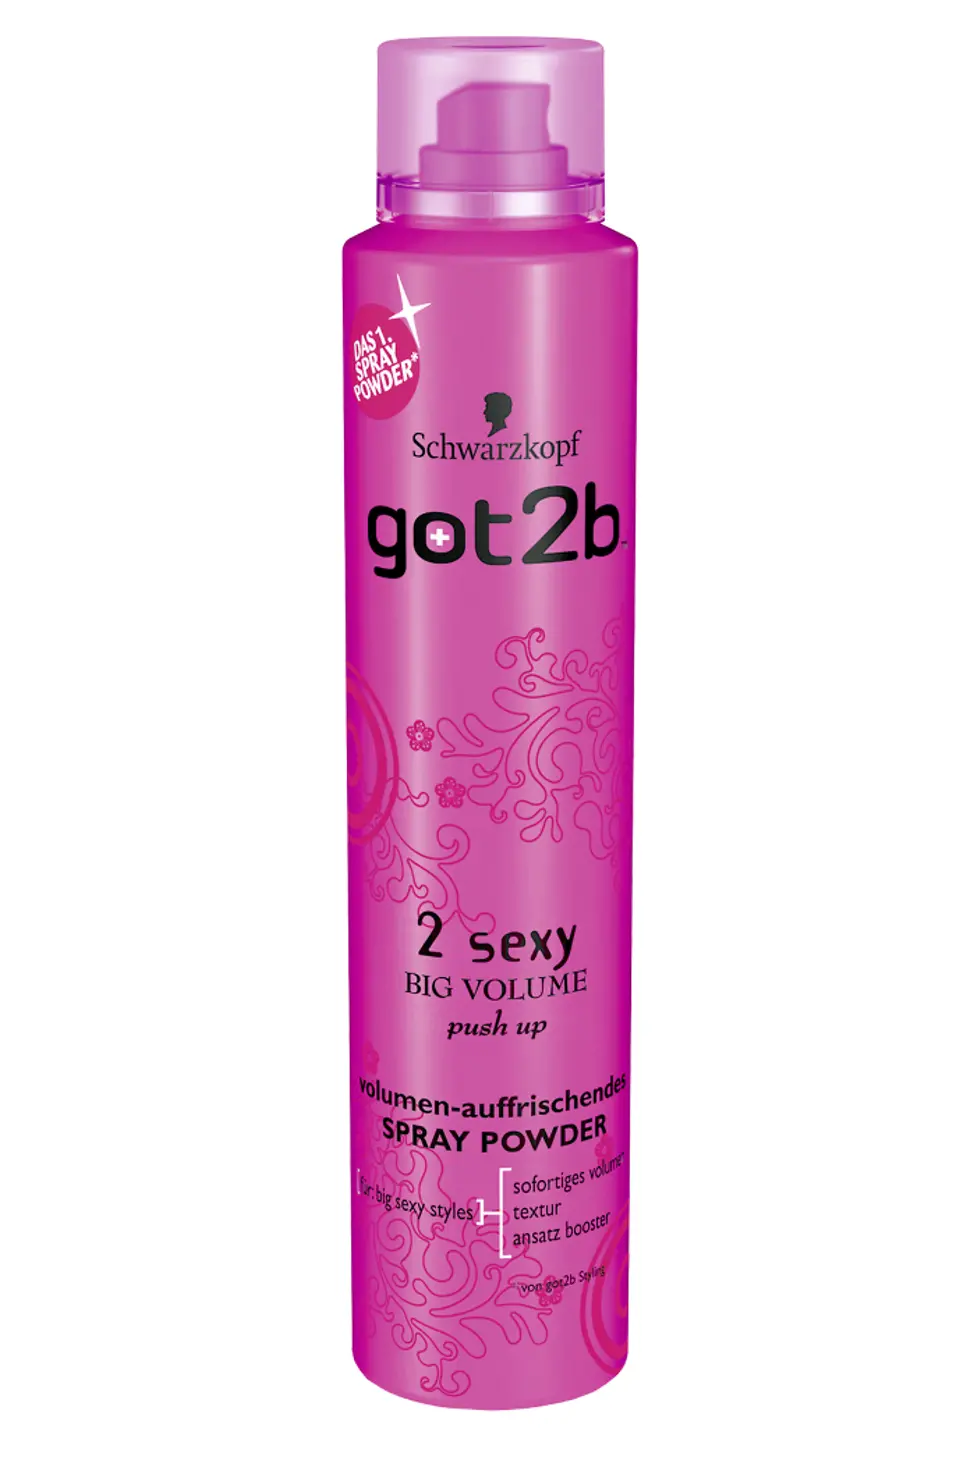 got2b 2sexy volumen-auffrischendes Spray Powder